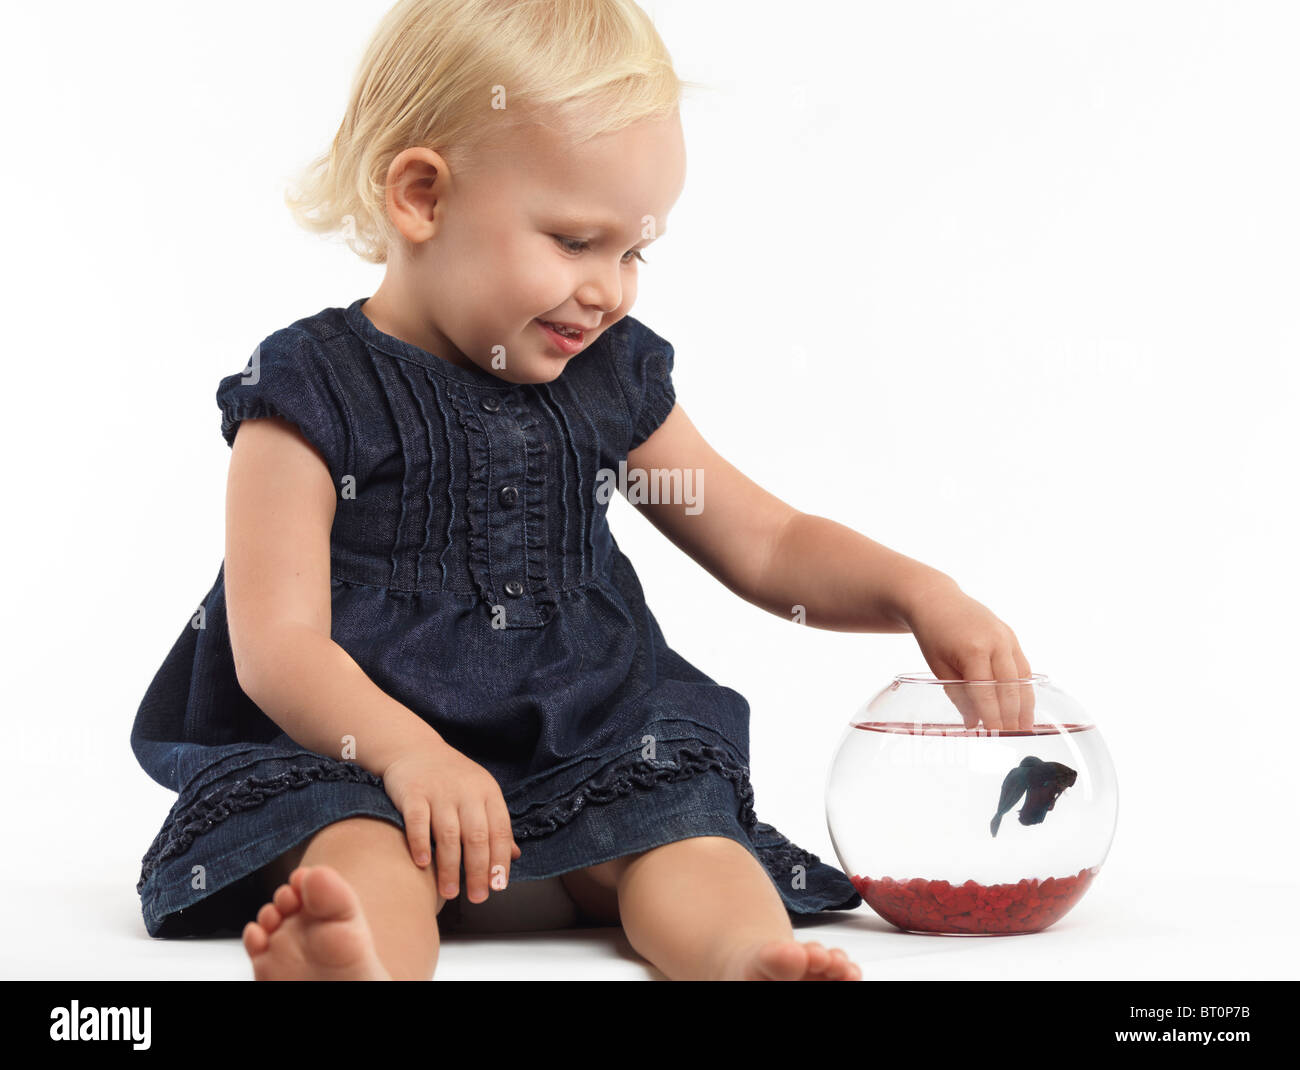 Porträt von einem lächelnden zwei Jahre alten Mädchen spielen mit einem Fisch in eine Schüssel geben, die isoliert auf weißem Hintergrund Stockfoto